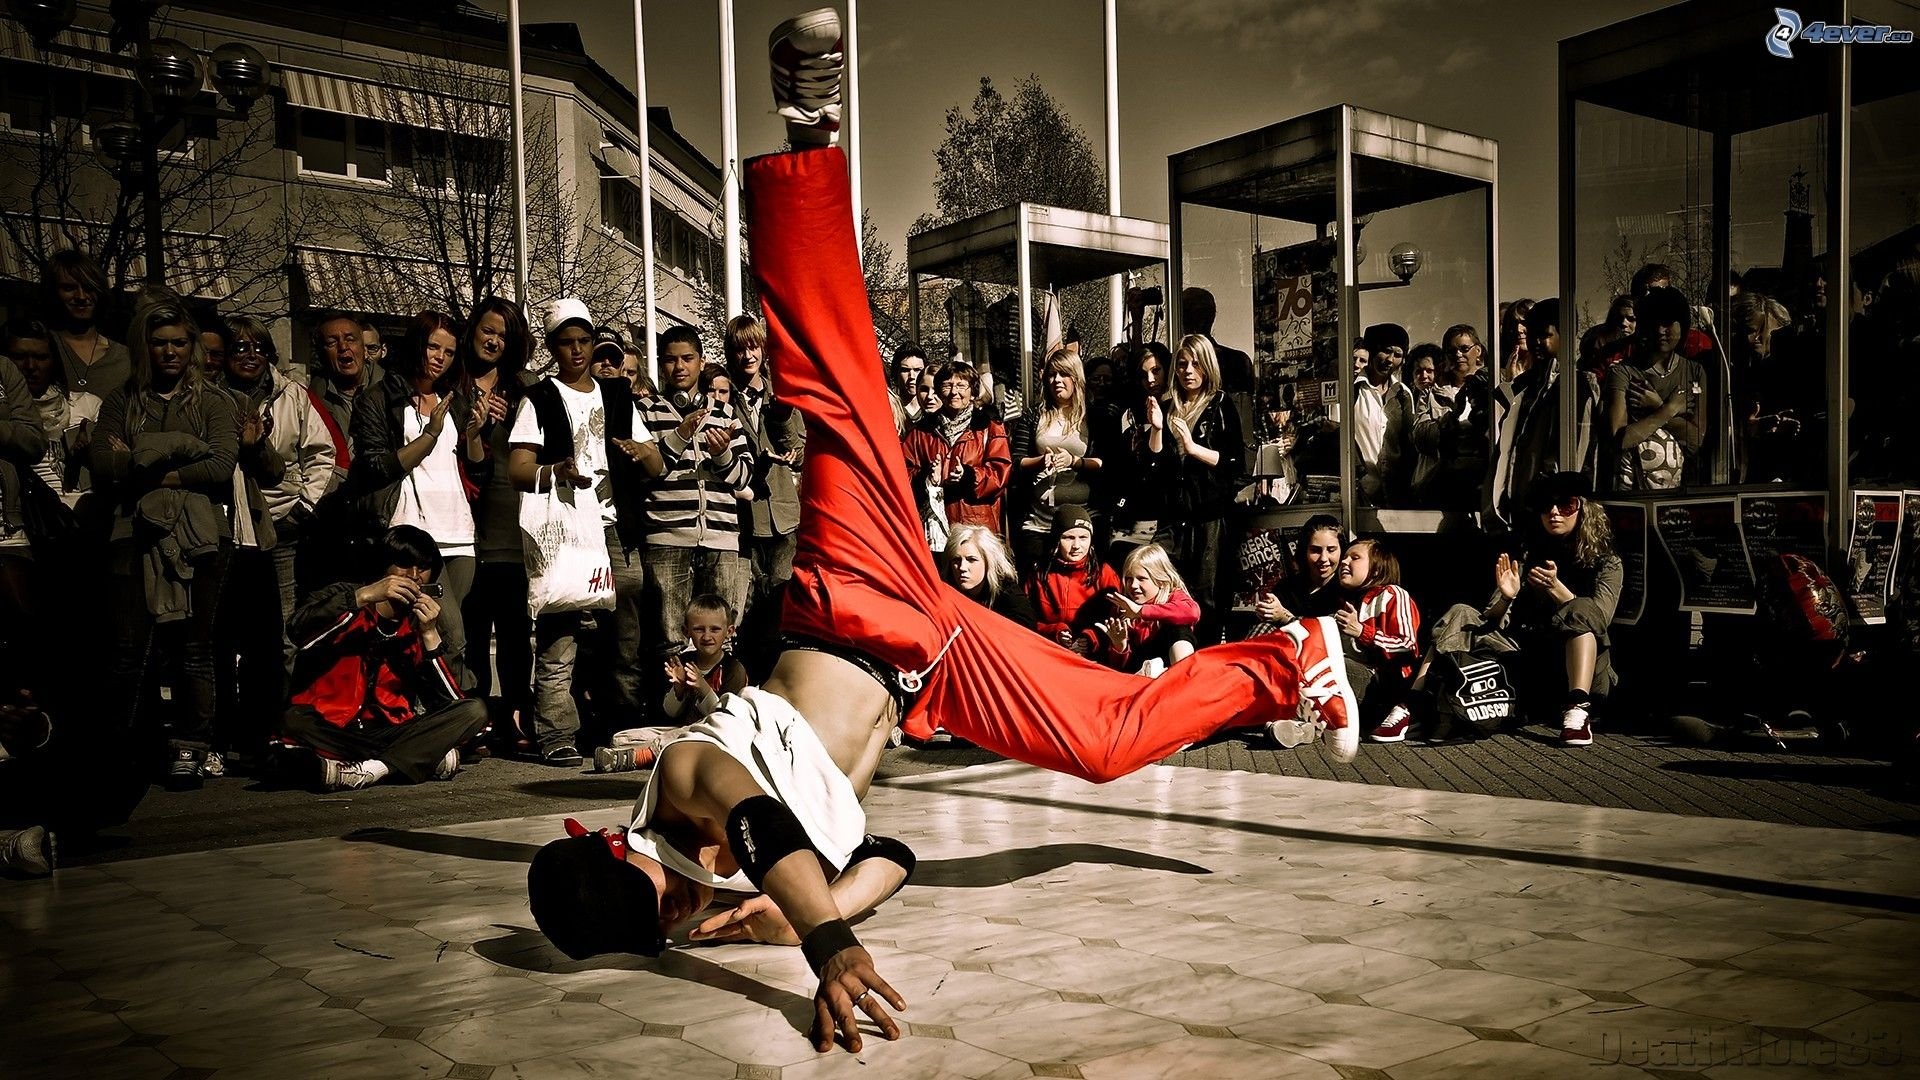 Street Dance: Breakdance, Hip hop, A vernacular dance in an urban context. 1920x1080 Full HD Background.